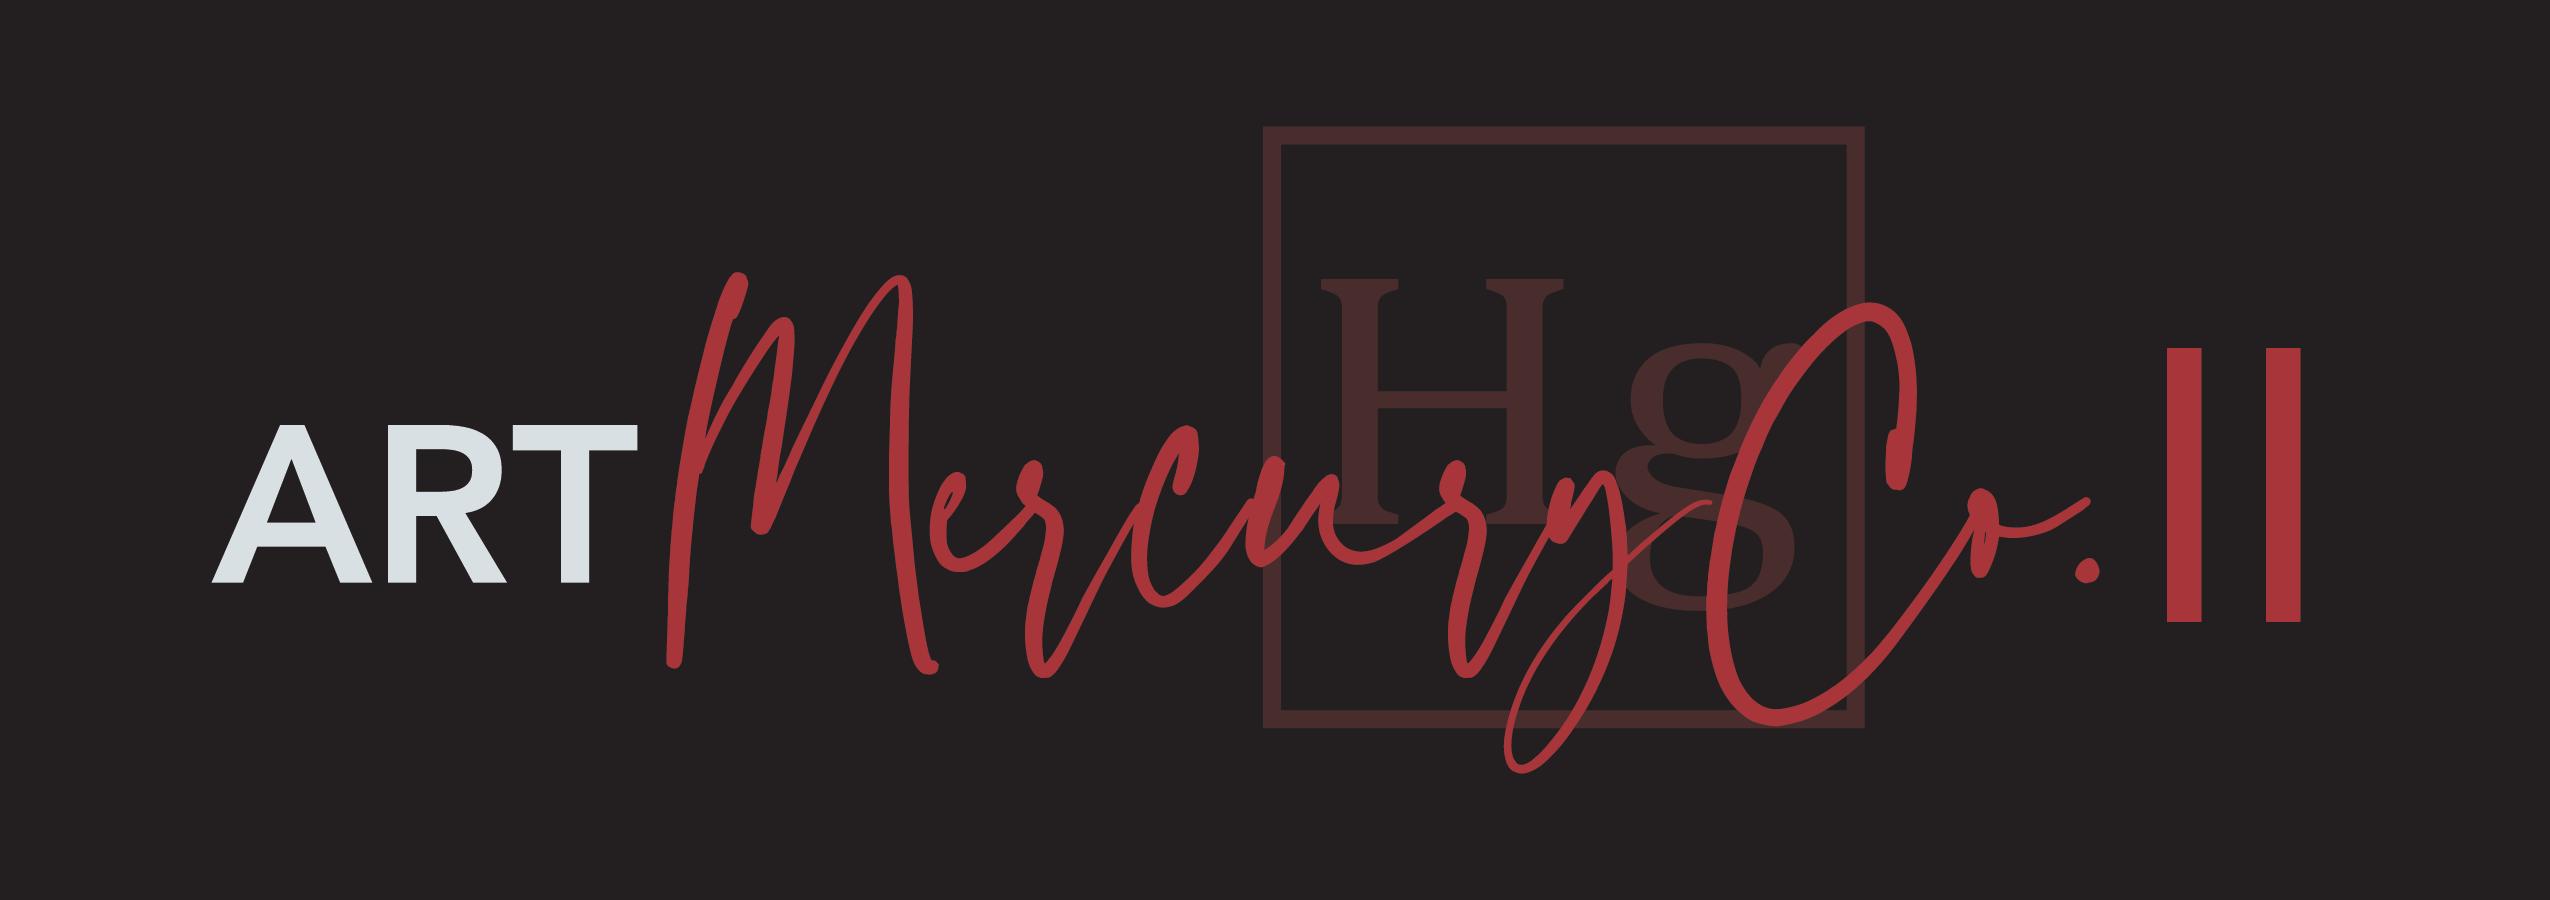 Announcing ART: Mercury Company II